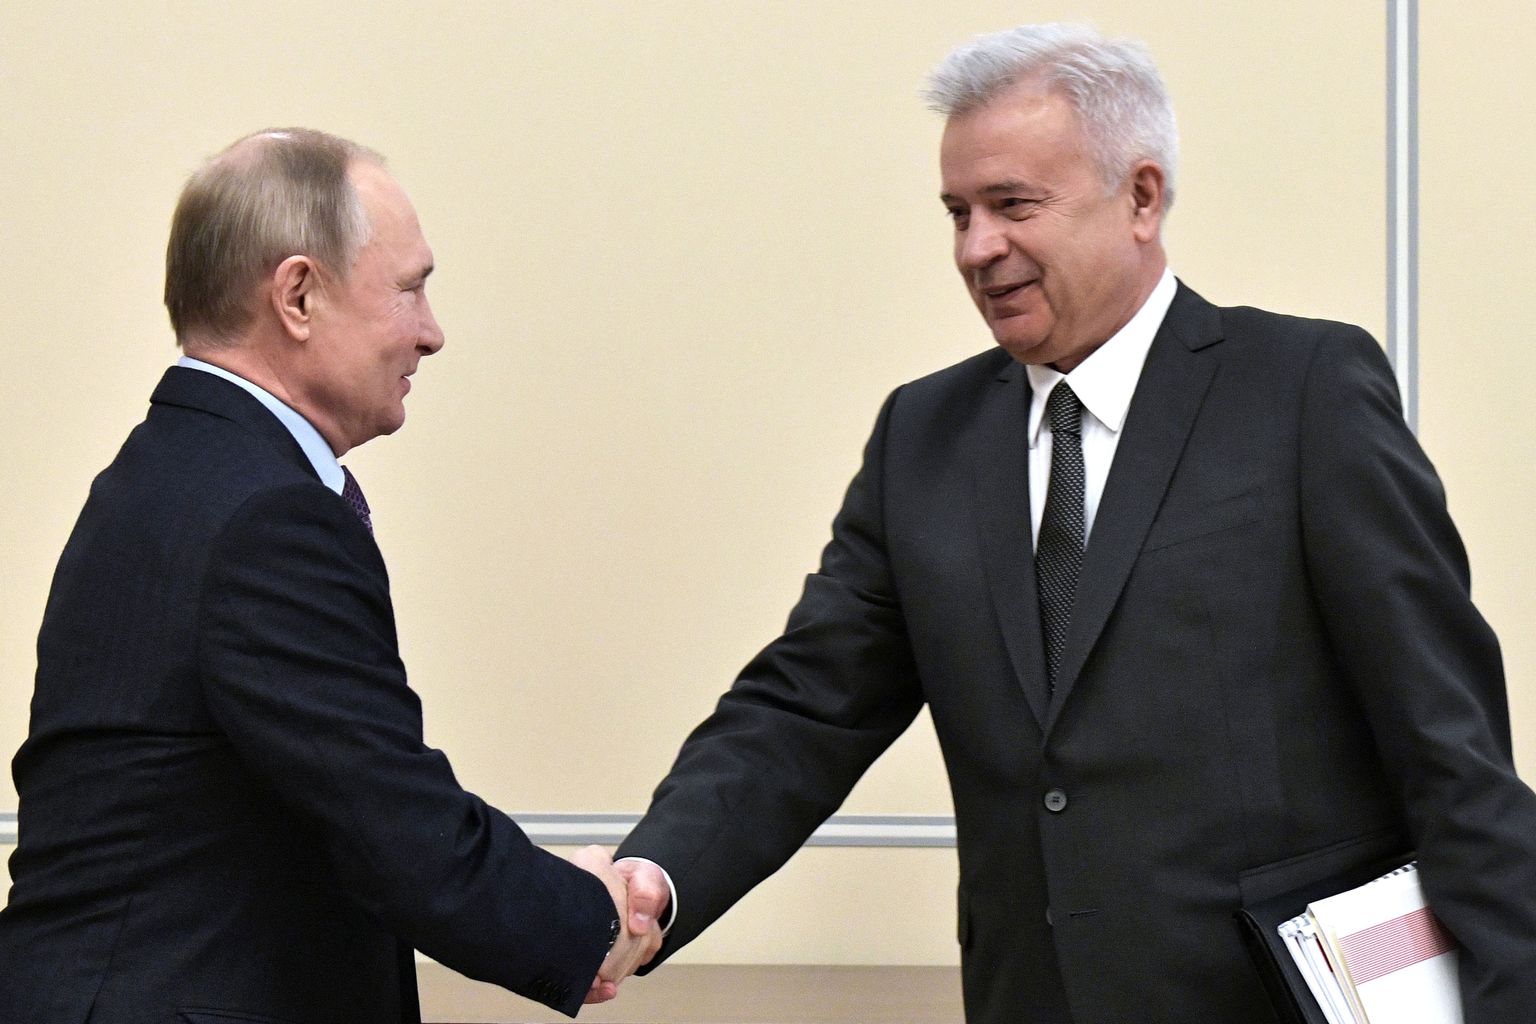 Venemaa president Vladimir Putin surumas kätt Lukoili presidendi Vagit Alekperoviga.